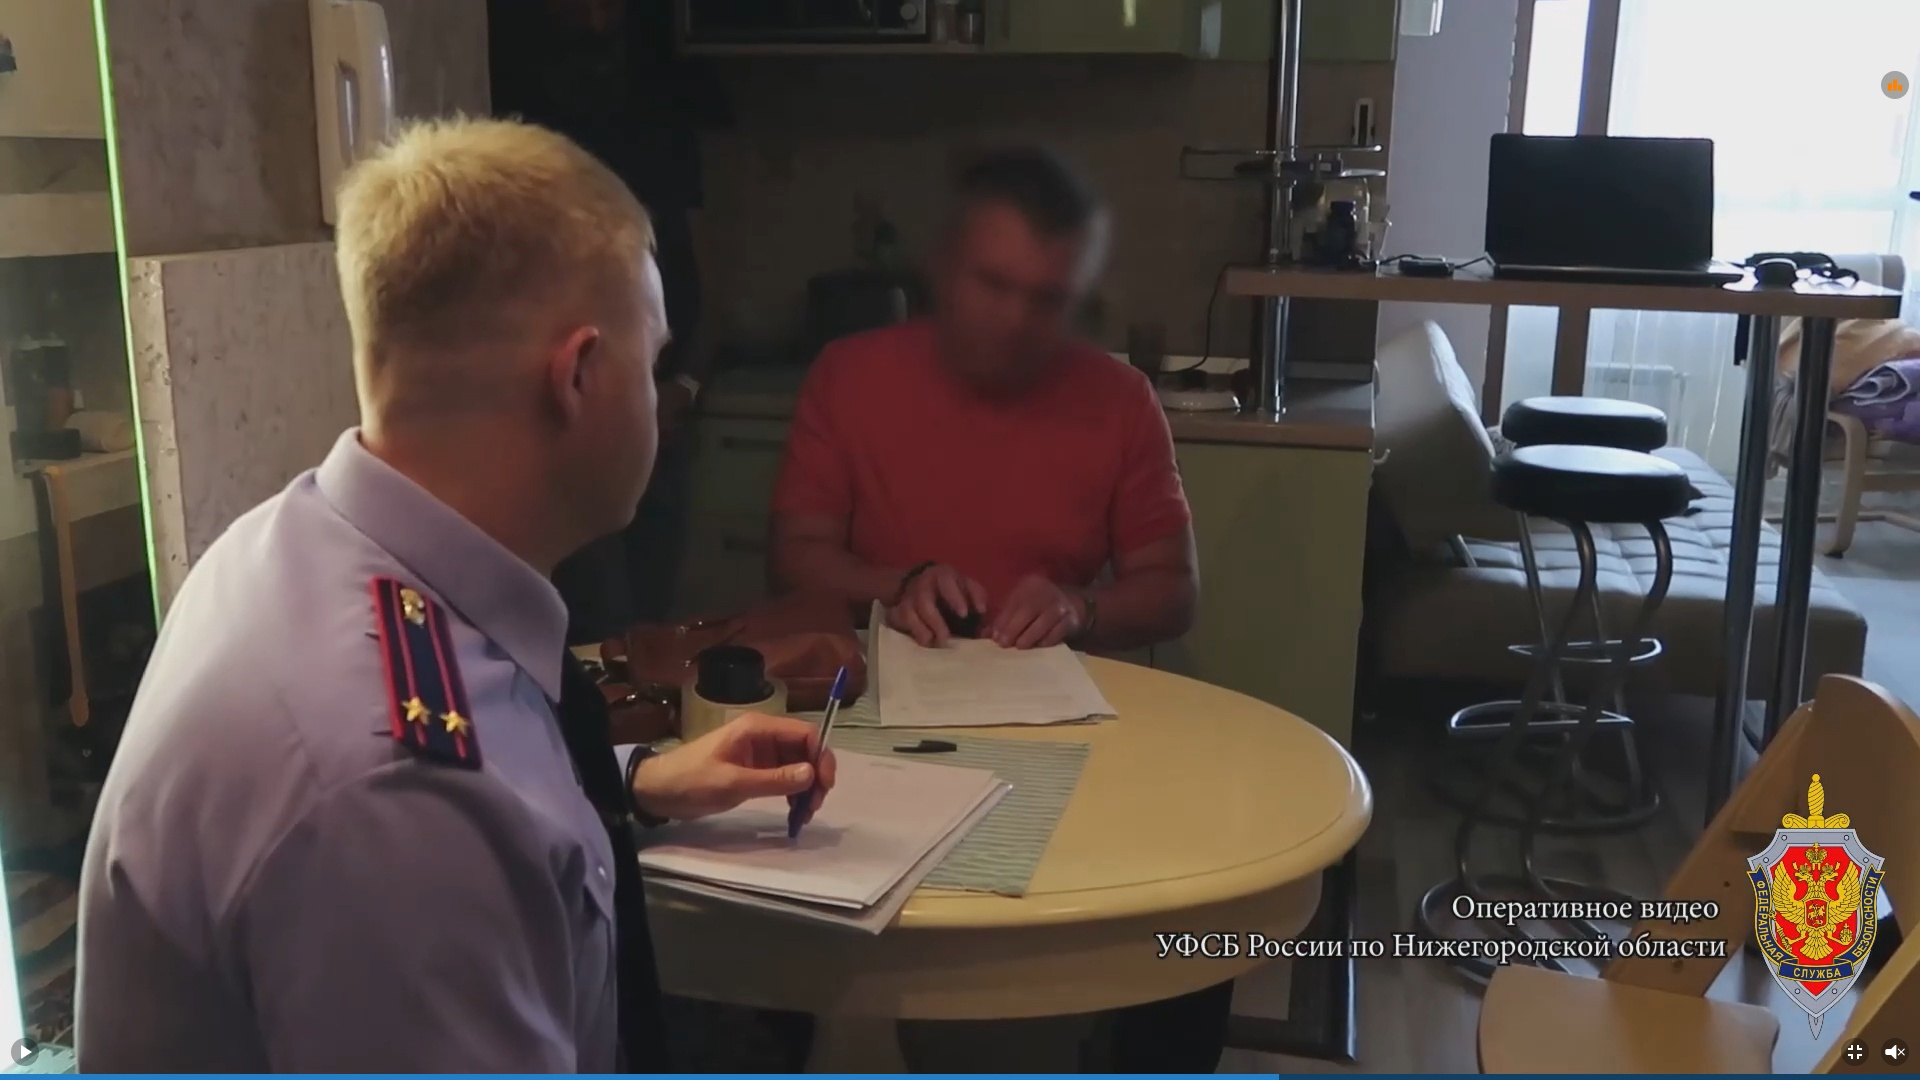 Нижегородское УФСБ задержало главу тыла транспортной полиции: его подозревают в махинациях. Оперативное видео